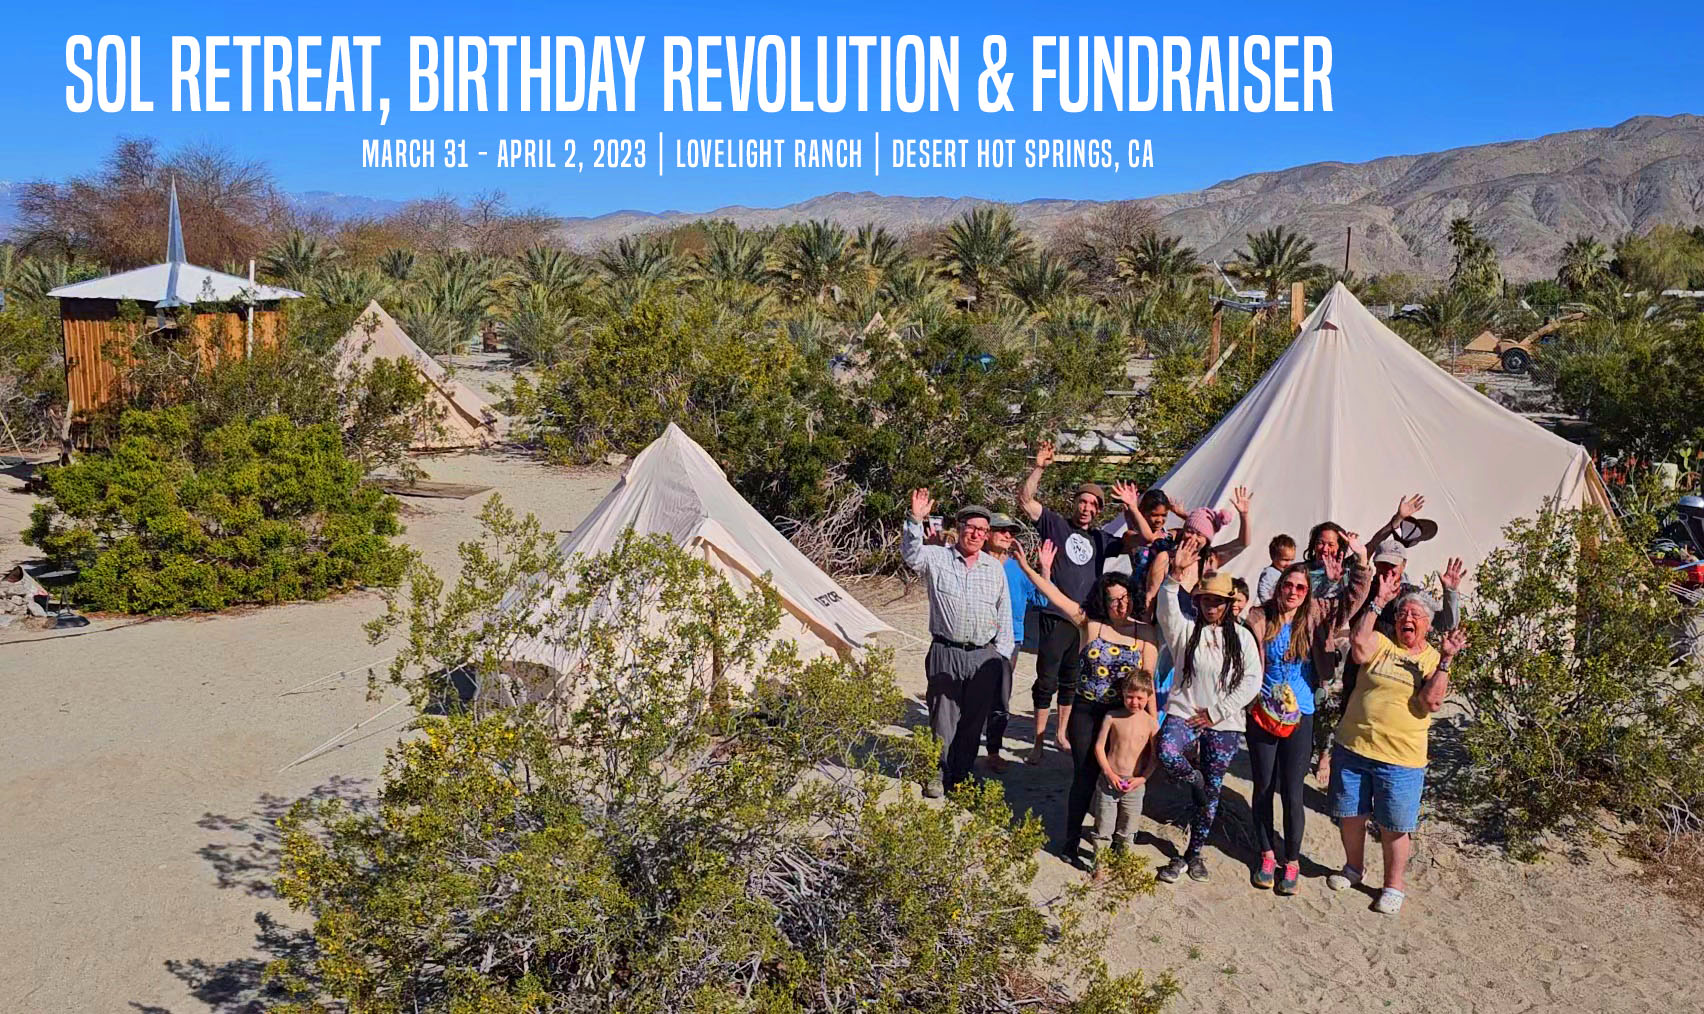 Sol Retreat Birthday Revolution & Fundraiser